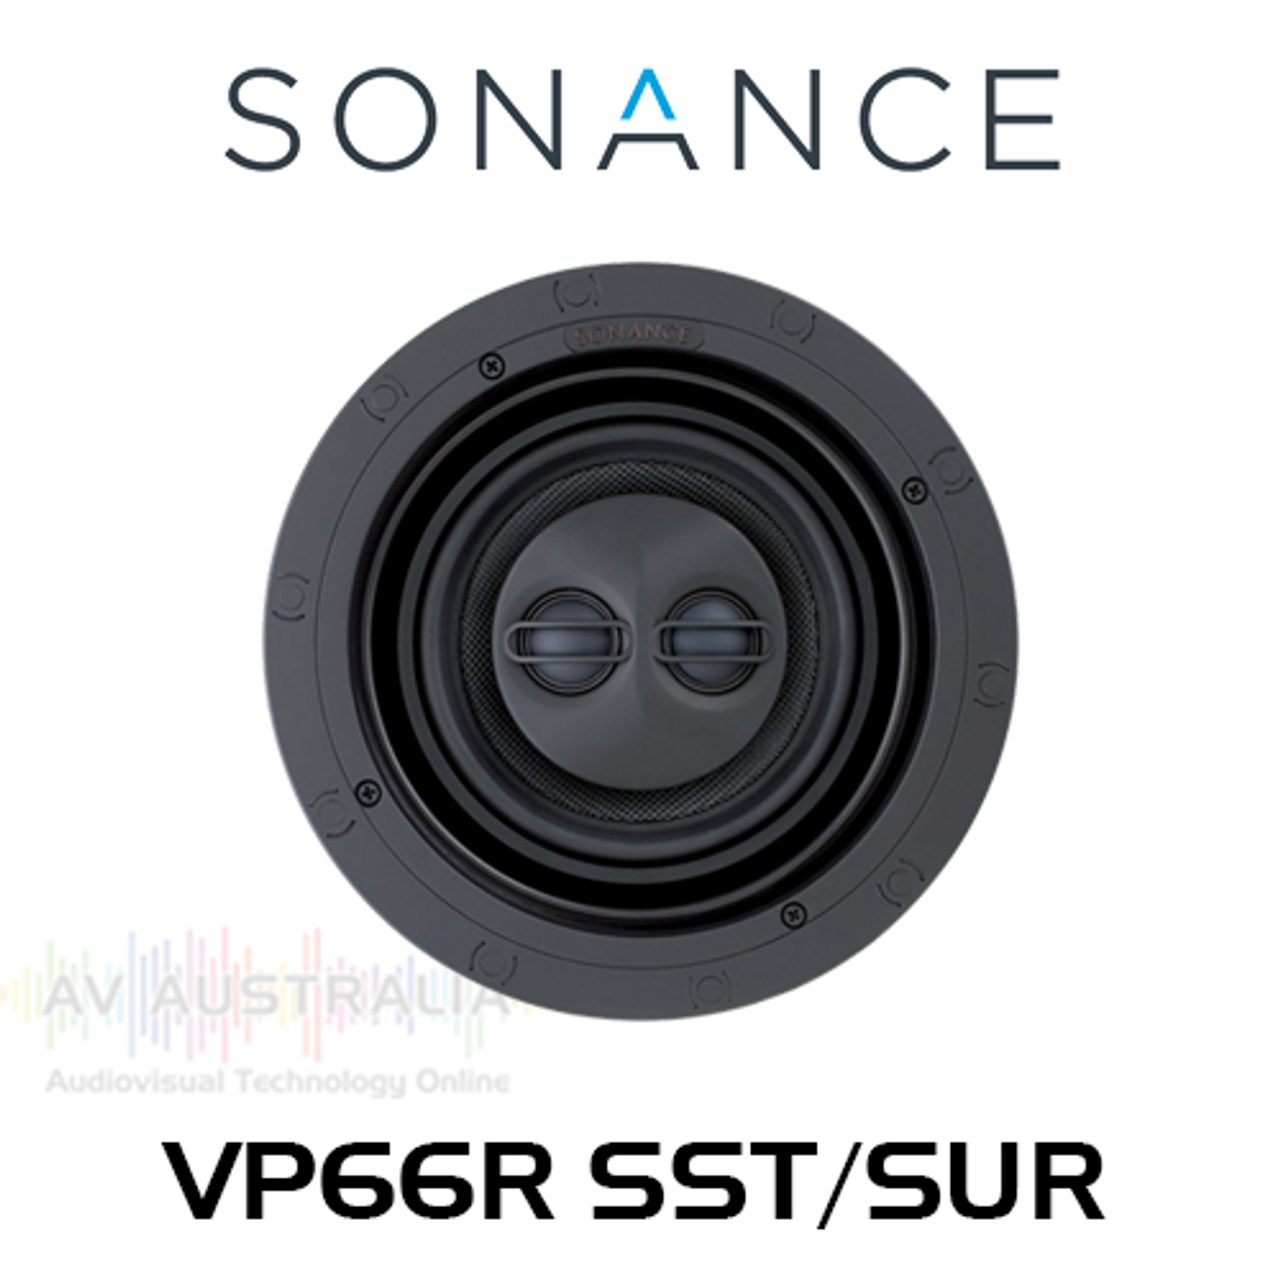 Sonance VP66R SST/SUR 6" In-Ceiling Round Speaker (Each)